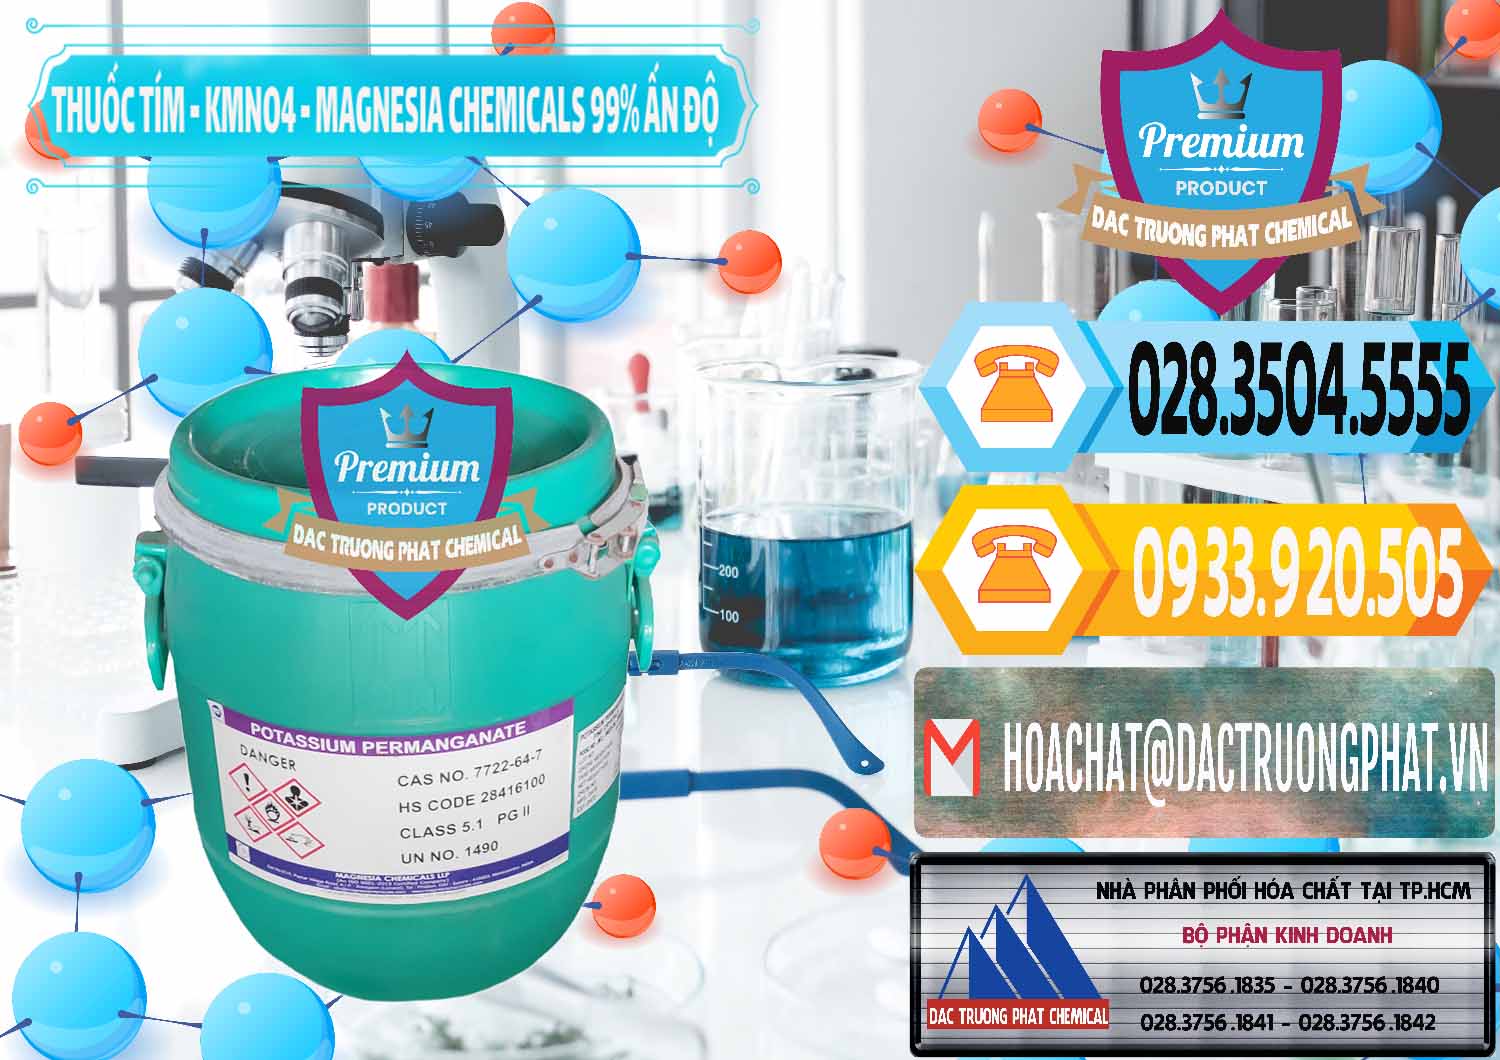 Công ty chuyên cung ứng ( bán ) Thuốc Tím - KMNO4 Magnesia Chemicals 99% Ấn Độ India - 0251 - Cty bán _ cung cấp hóa chất tại TP.HCM - hoachattayrua.net